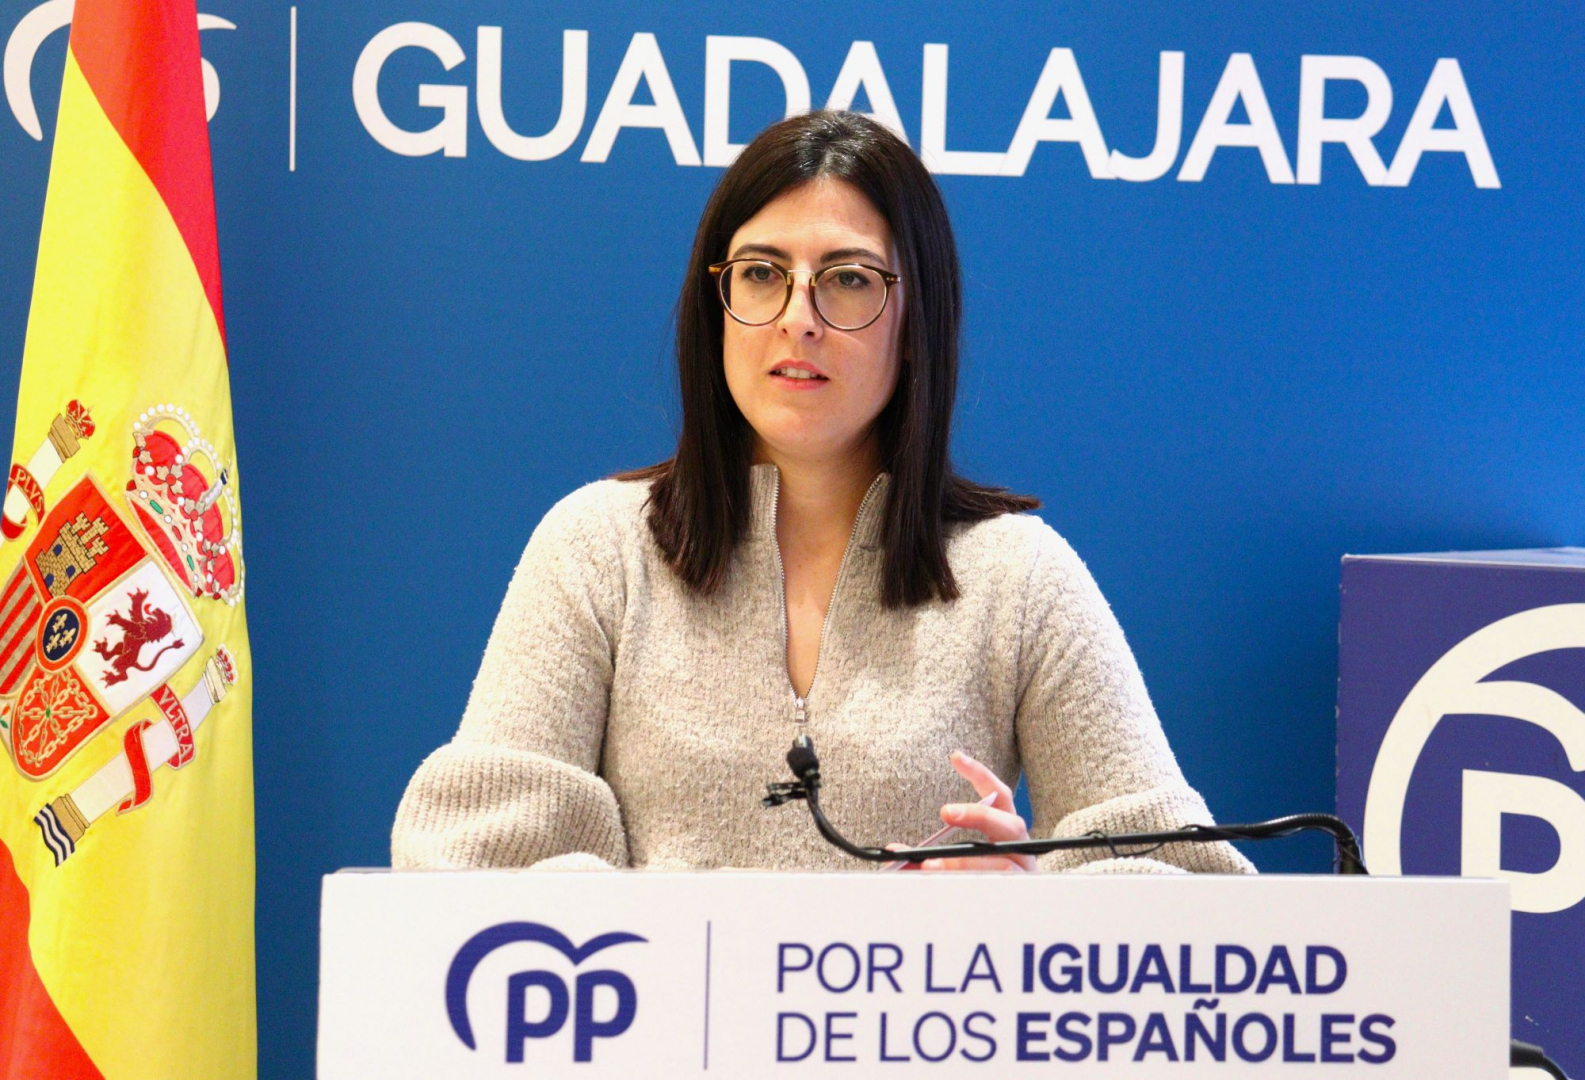 La senadora del PP, María Patricio, durante la rueda de prensa//Imagen: PP Guadalajara.